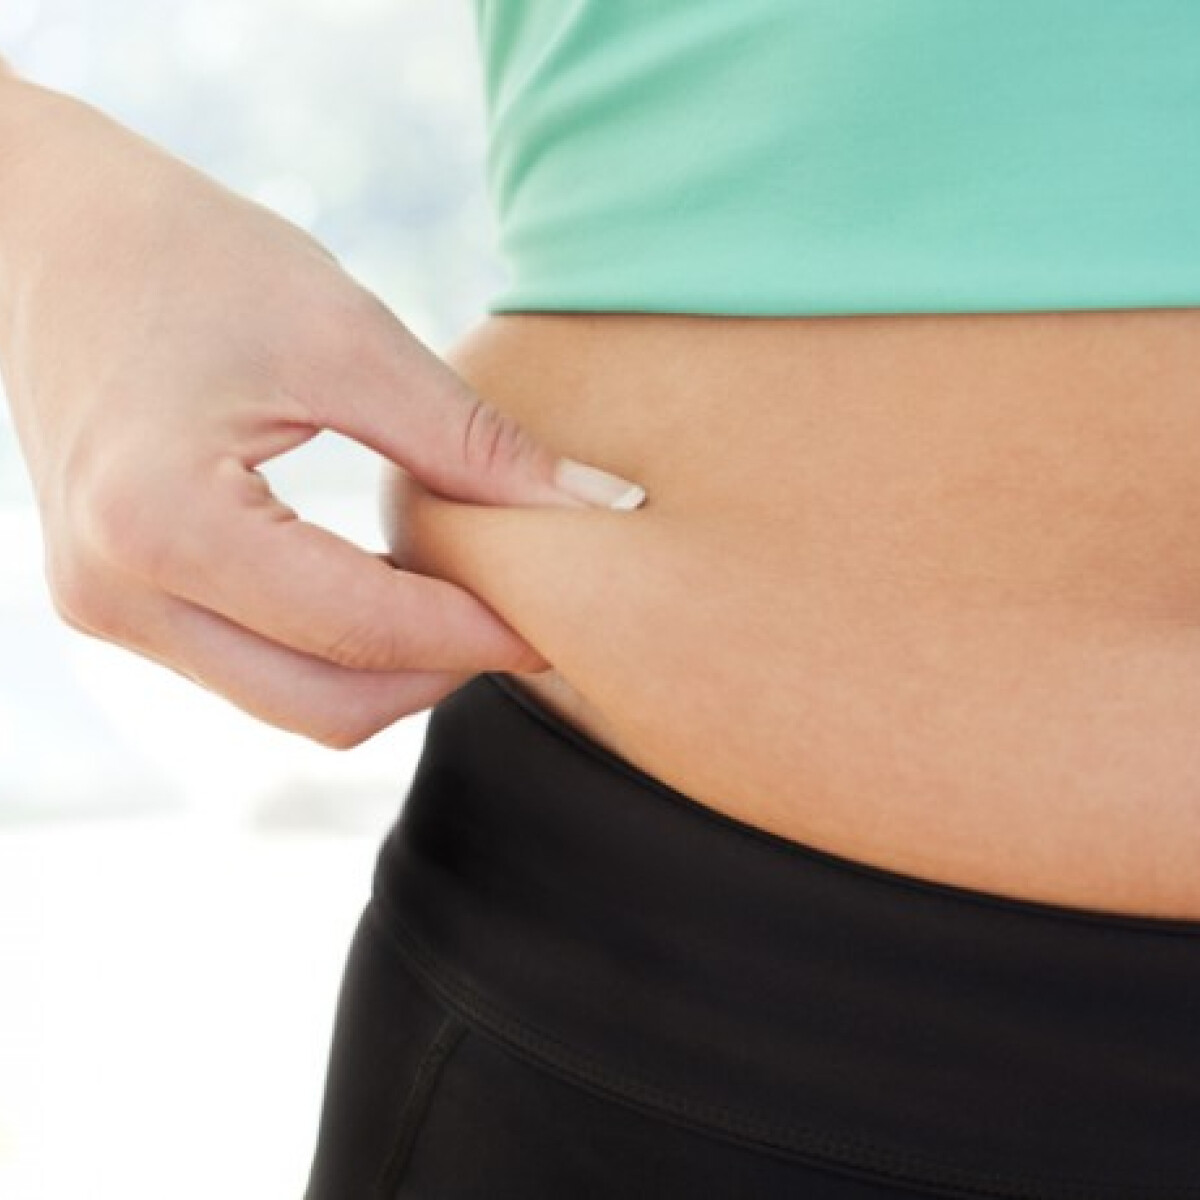 10 legjobb módszer a testzsír csökkentésére